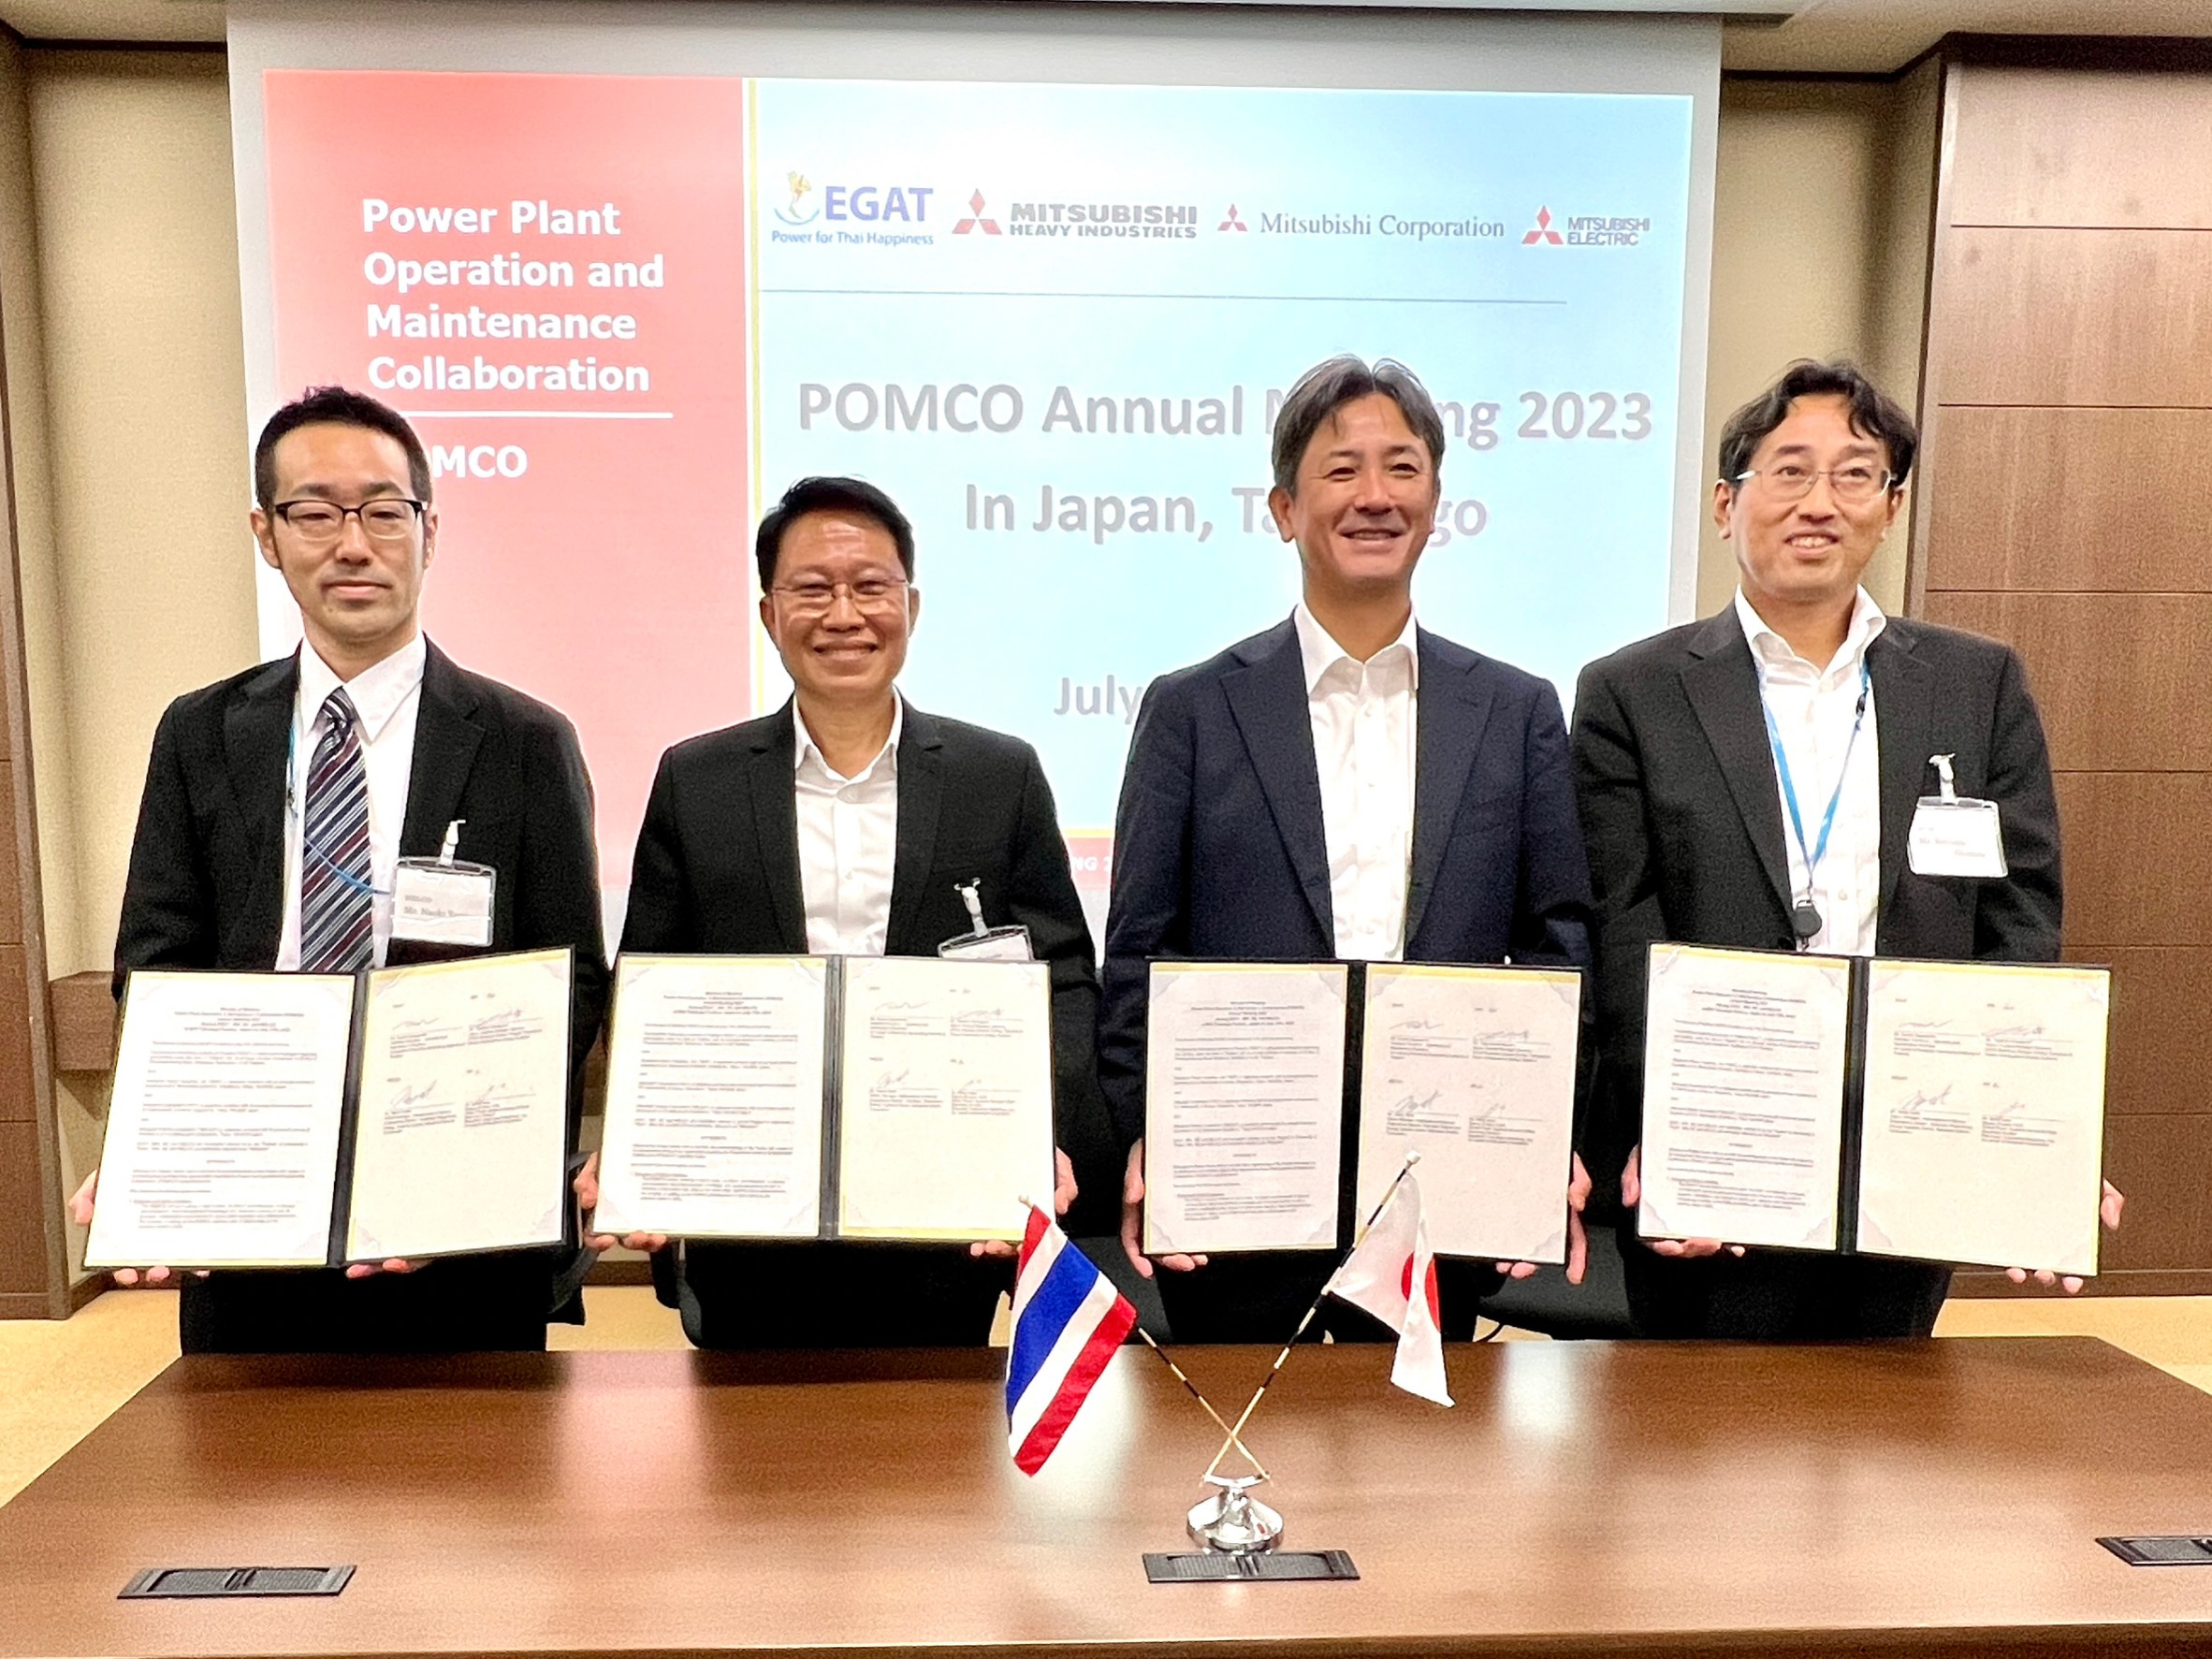 กฟผ. ร่วมกับ บริษัท MHI และ บริษัท MC จัดการประชุม POMCO Annual Meeting 2023 ณ ประเทศญี่ปุ่น